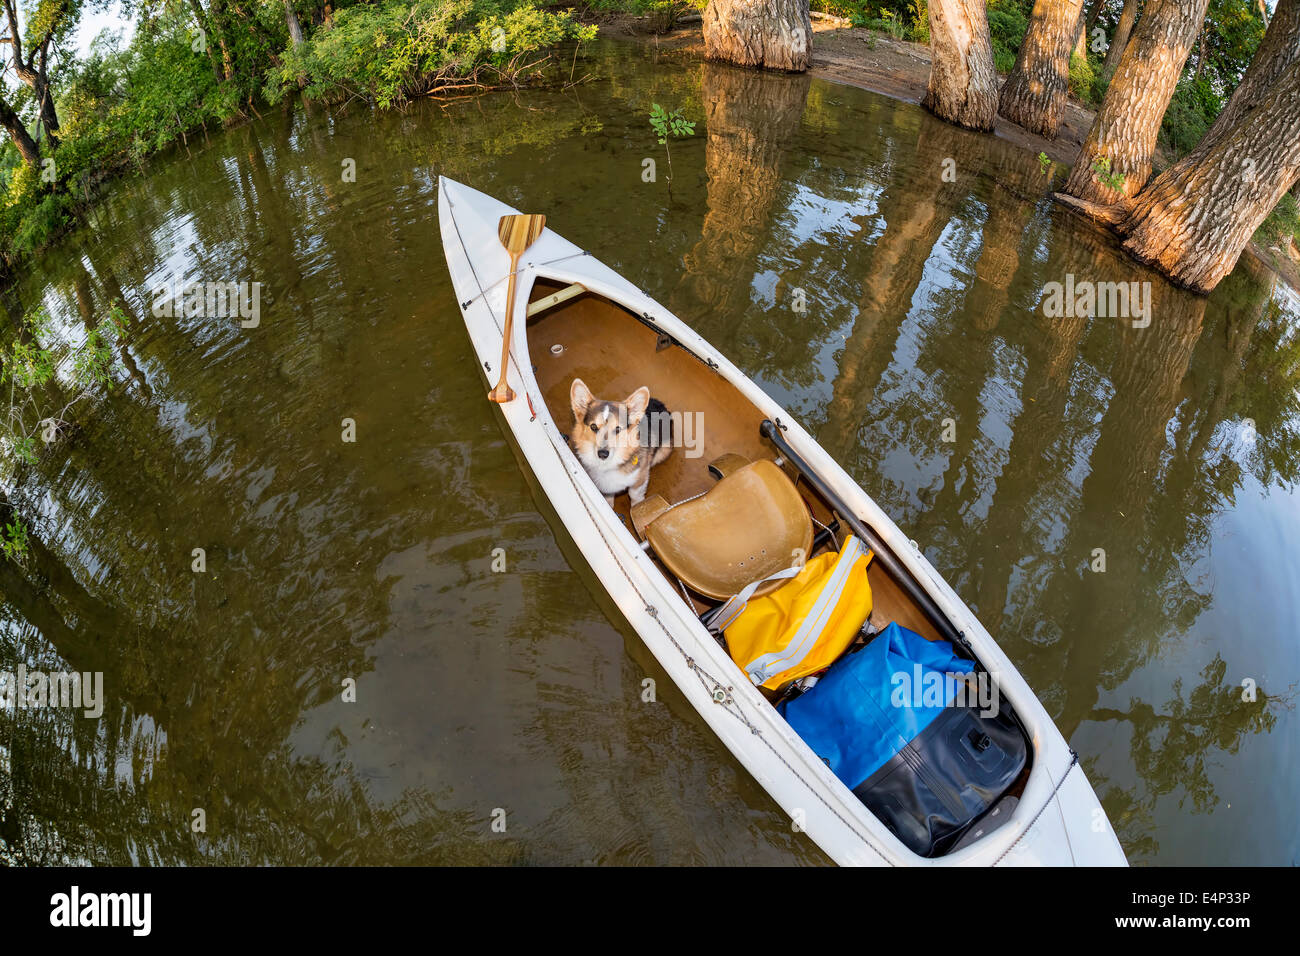 Corgi cane in un adorna Expedition canoe su un lago in Colorado, una distorta ampio angolo lente fisheye prospettiva Foto Stock